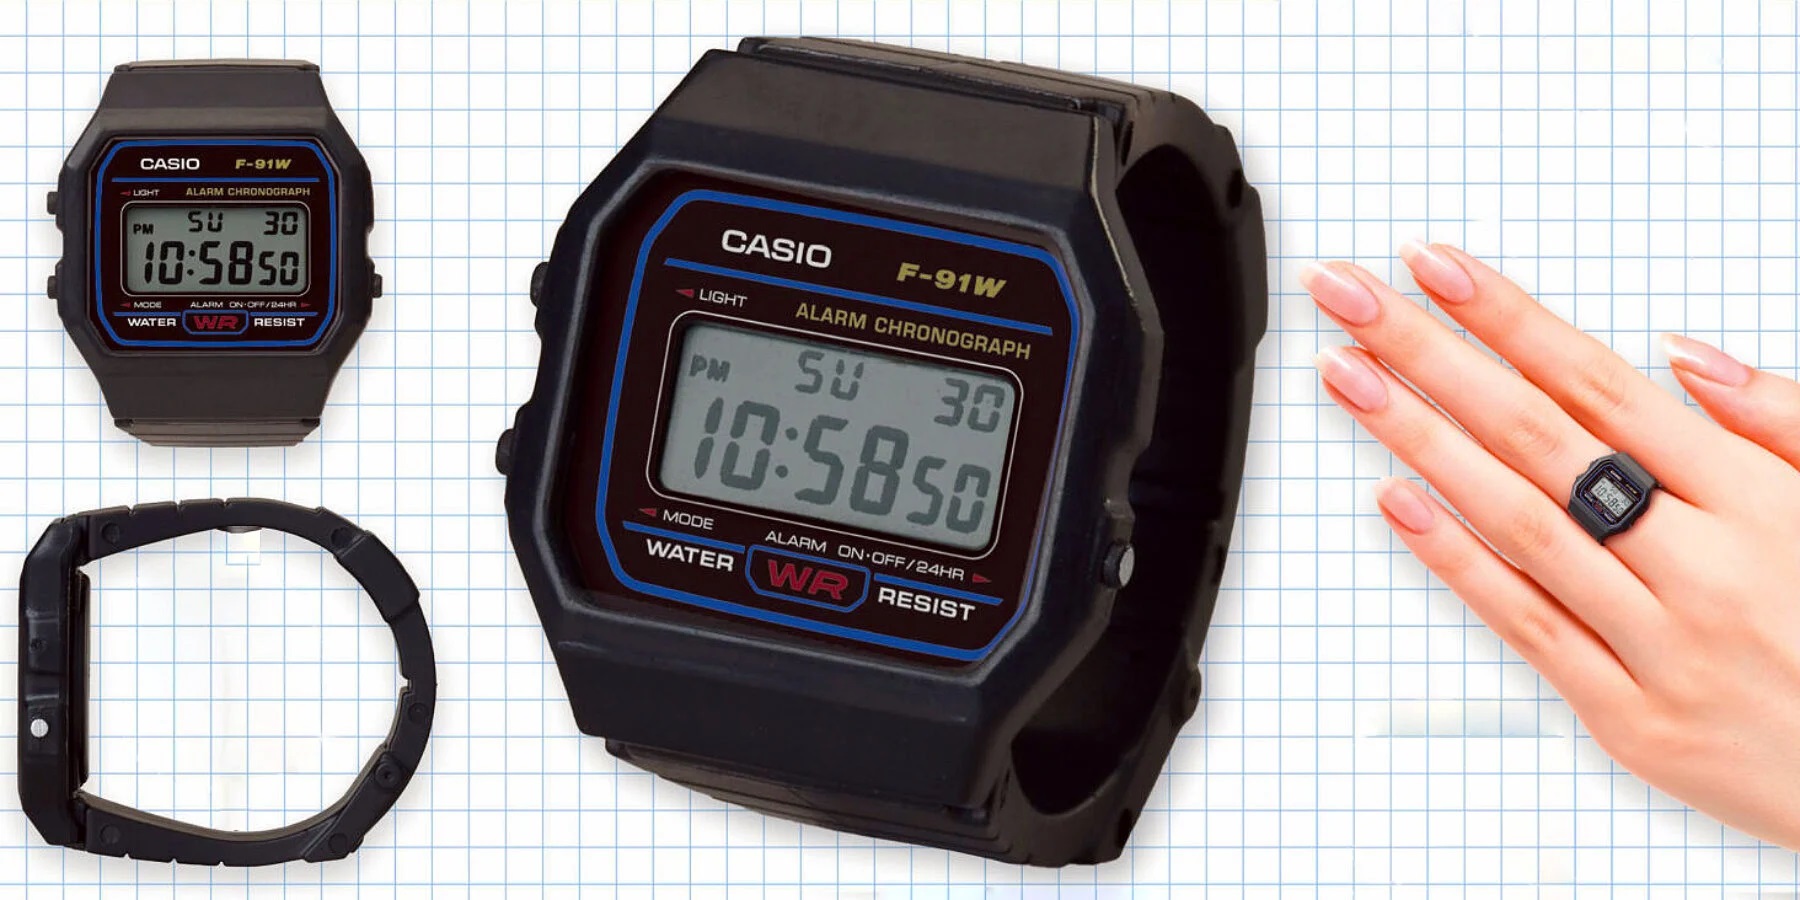 Casio випустила колекцію міні-годинників у вигляді кілець